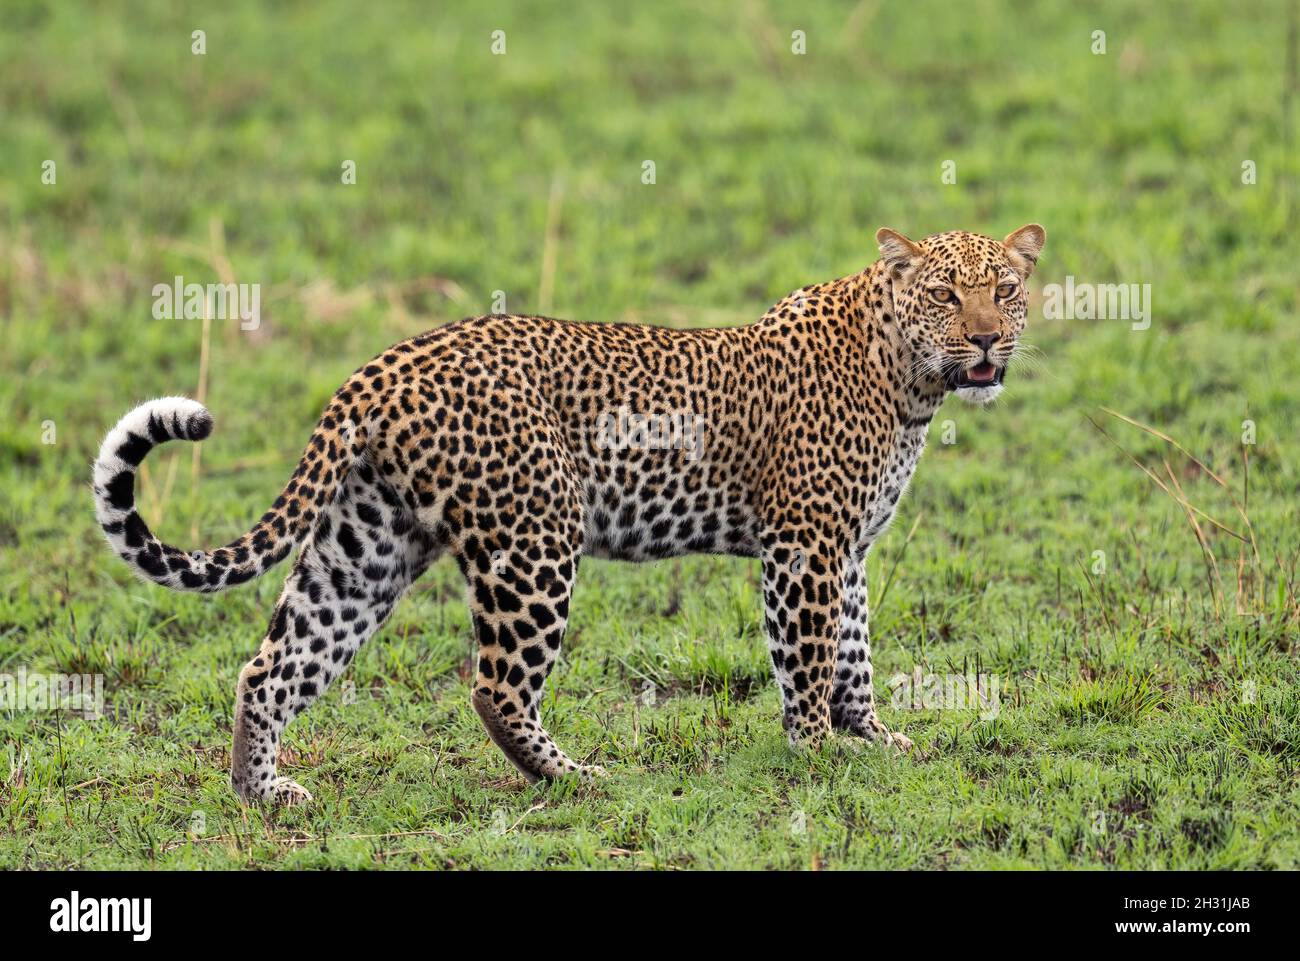 Leopard - Panthera Pardus, wunderschöner, ikonischer Raubtieren aus afrikanischen Büschen, Savannen und Wäldern, Queen Elizabeth National Park, Uganda. Stockfoto